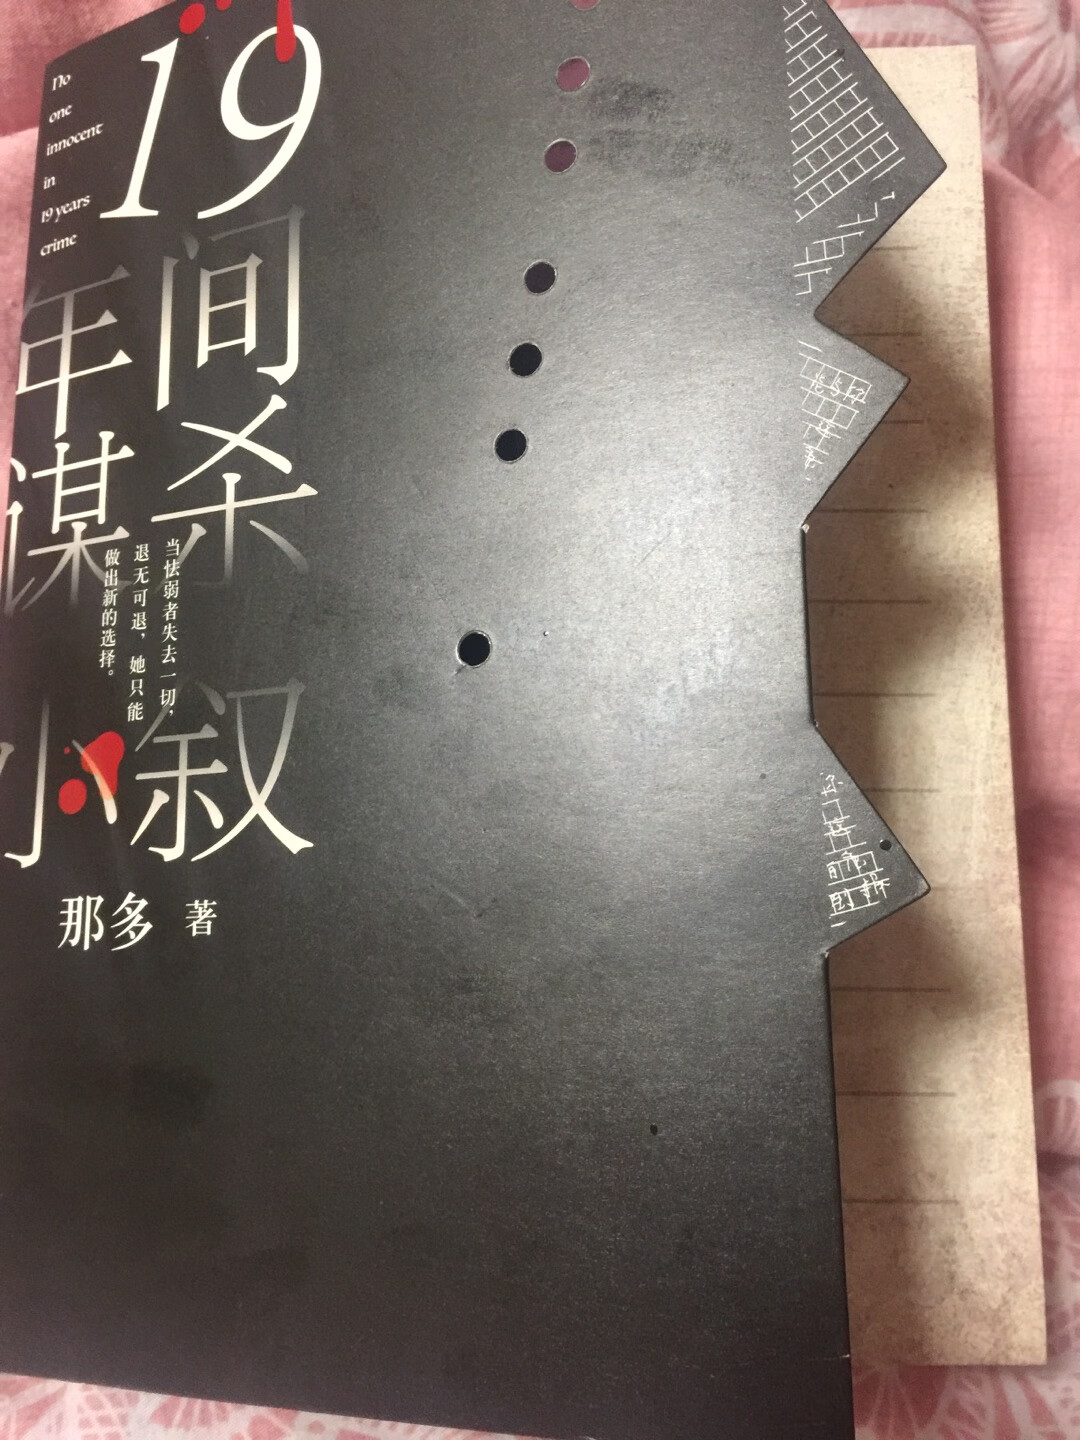 号称“东野圭*看了会流泪的小说”，冲着这句话买了这本书。小说很精彩，还没看完，但是很吸引人，奈何胆子太小，一看就害怕，放下又想看。简直了。